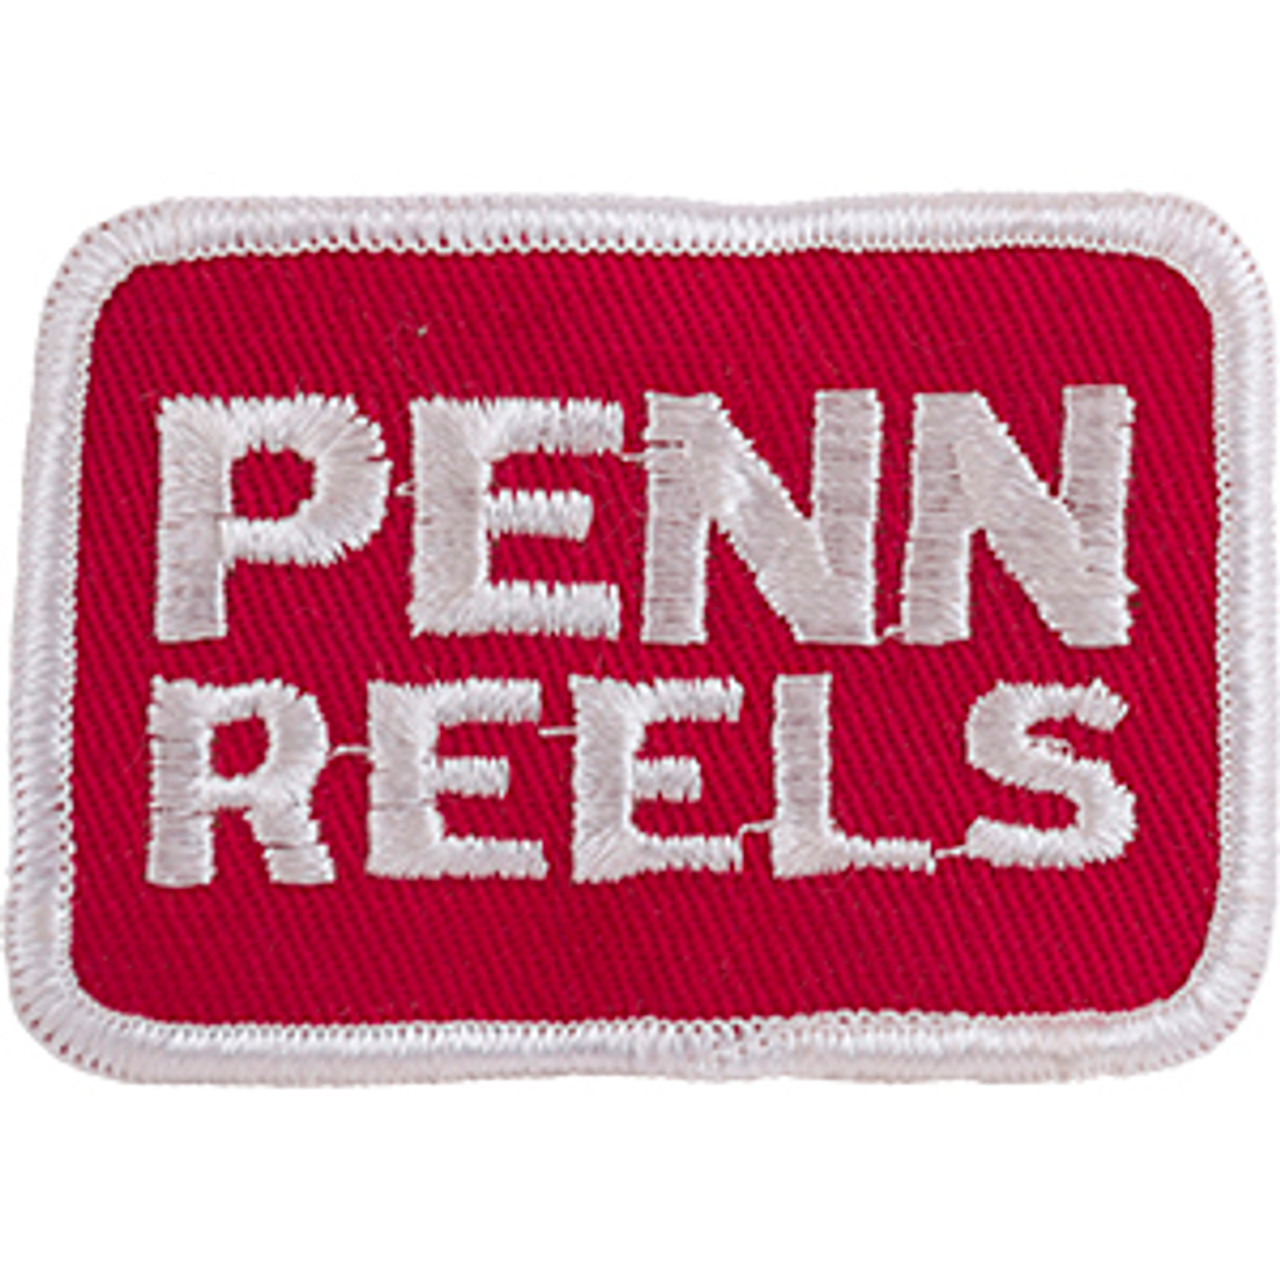 Penn Reels - Sew-On Patch